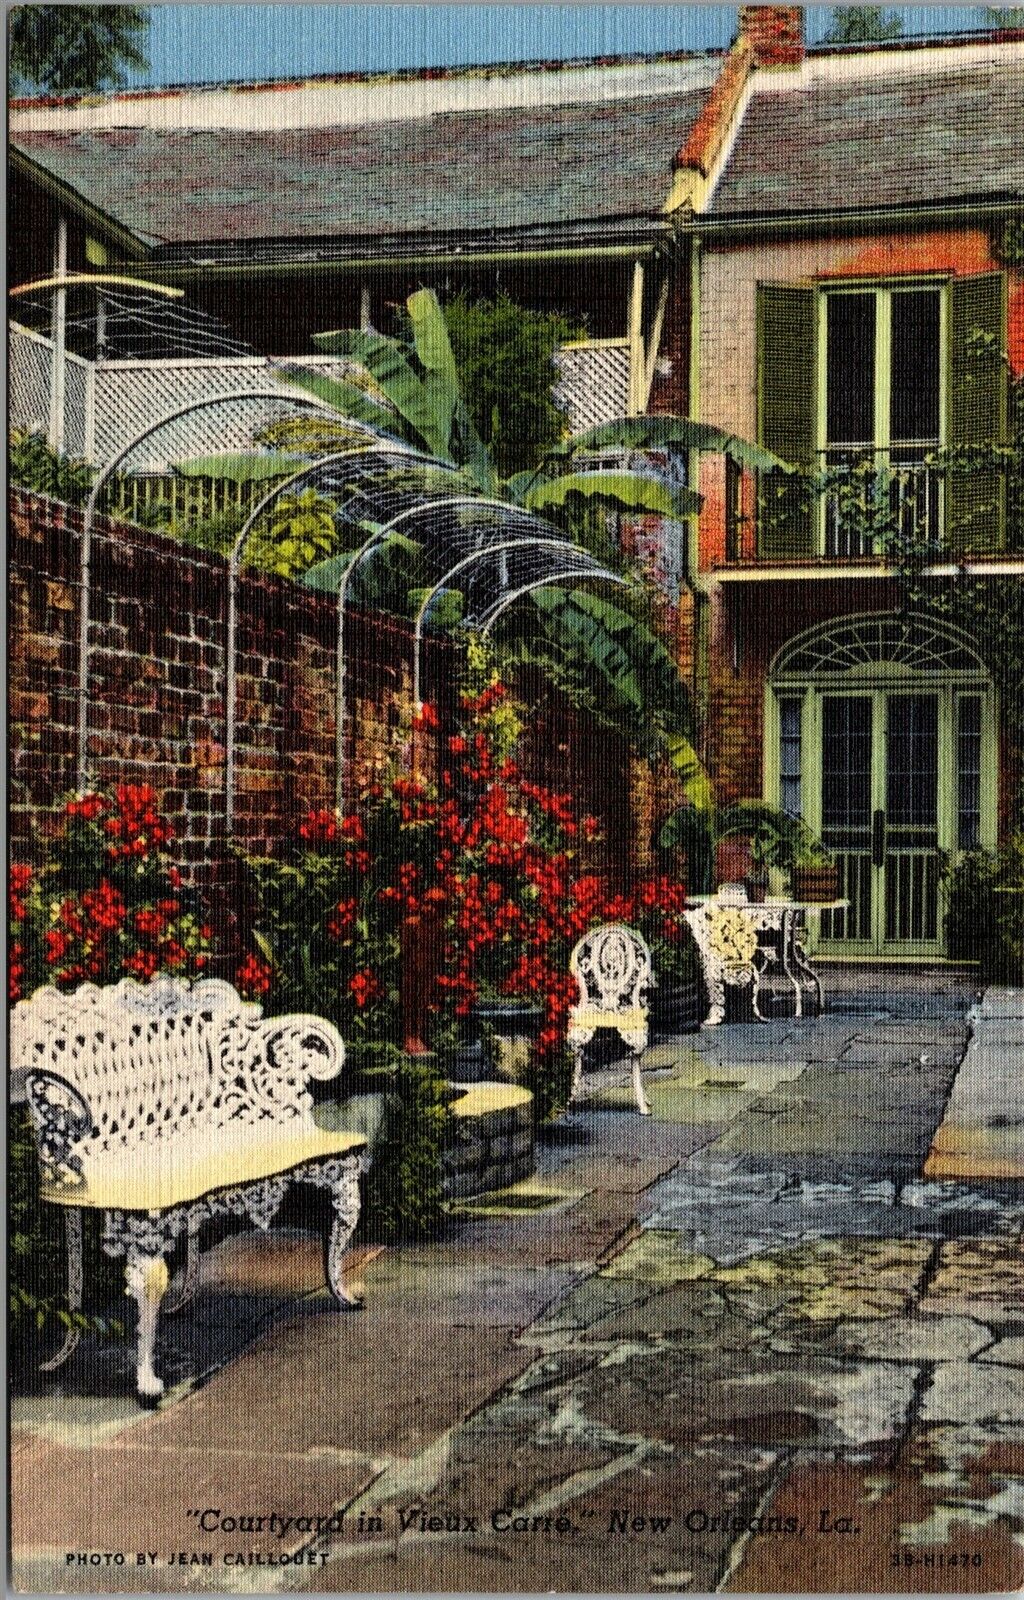 Vtg New Orleans Louisiana LA Courtyard Vieux Carre Freirson Court 1940s Postcard